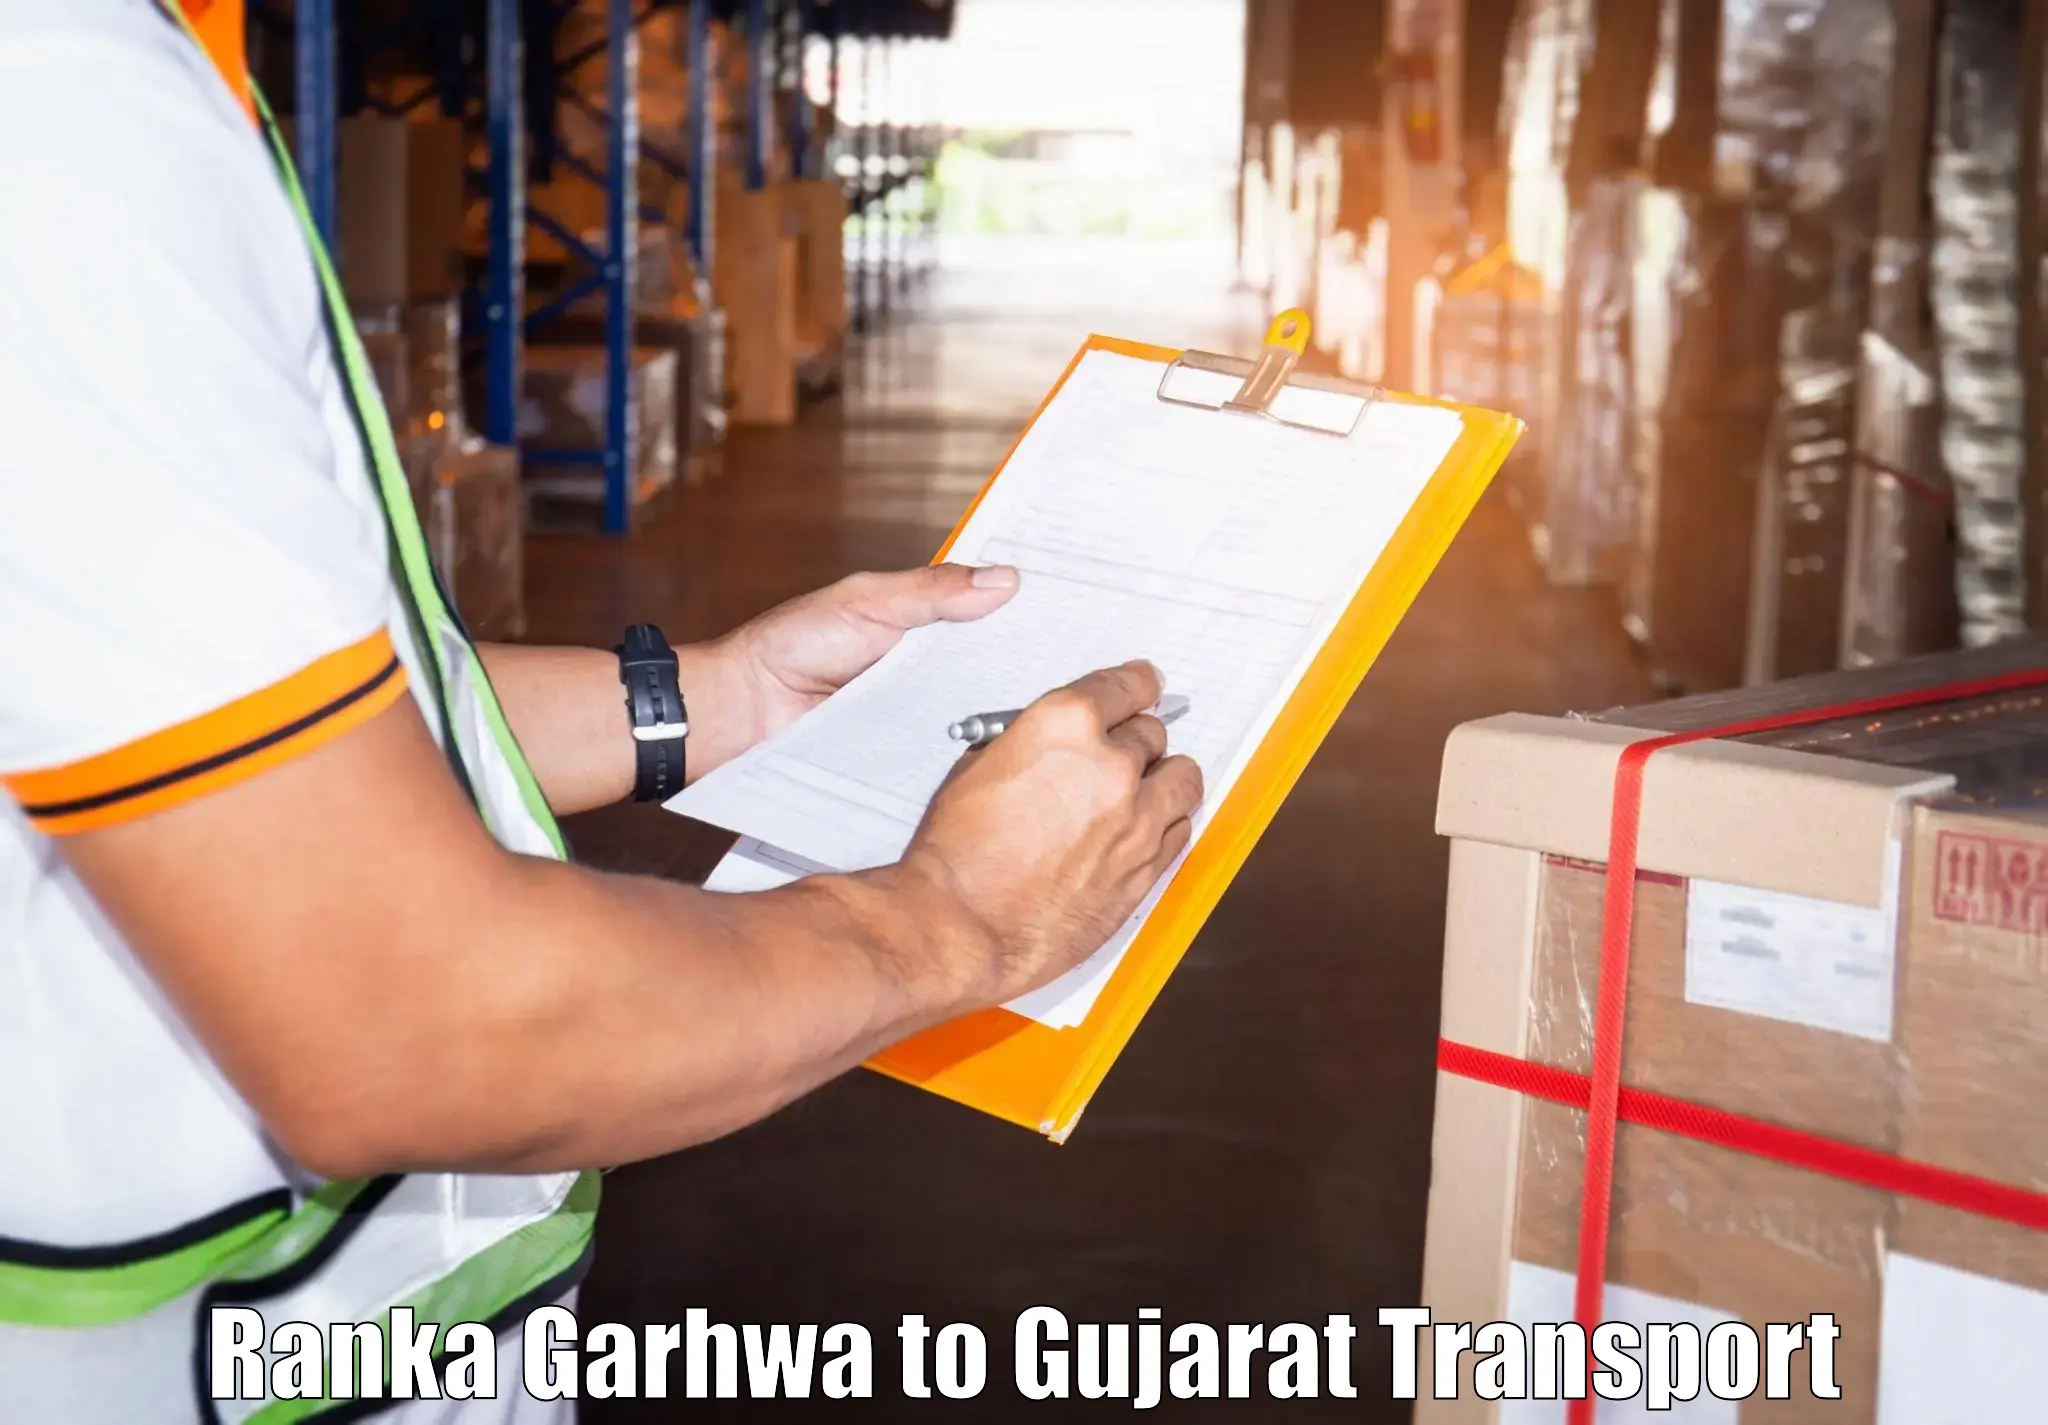 Furniture transport service Ranka Garhwa to Dholera